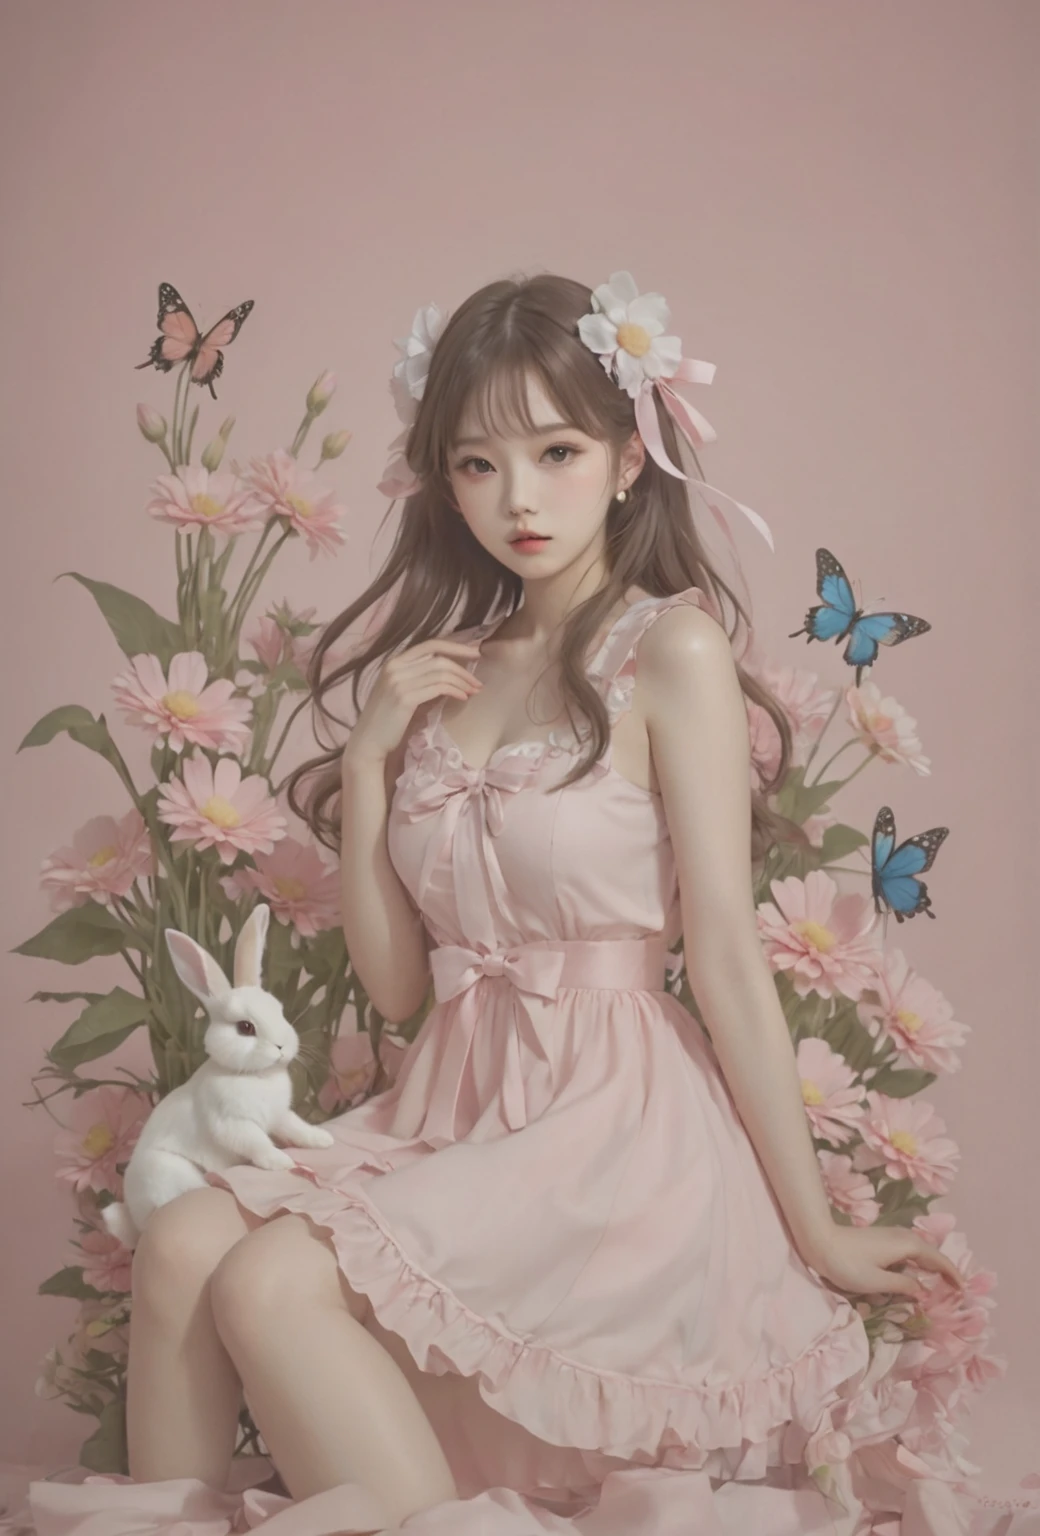 분홍색 สวมชุด 꽃밭에 앉아 있는 아라페 소녀, ultrarealistic sweet กระต่ายสาว,  สวมชุด, สุนทรียศาสตร์ที่น่าตื่นเต้นและน่ารัก, กู่เว่ยซู, artwork in the style of กู่เว่ยซู, แจยอนนัม, แกนนางฟ้า, ใบหน้าที่ดีที่สุด, กระต่ายสาว, พาสสีชมพู, น่ารักและน่ารัก, ผลงานที่ได้รับแรงบันดาลใจจาก Yanjun Cheng